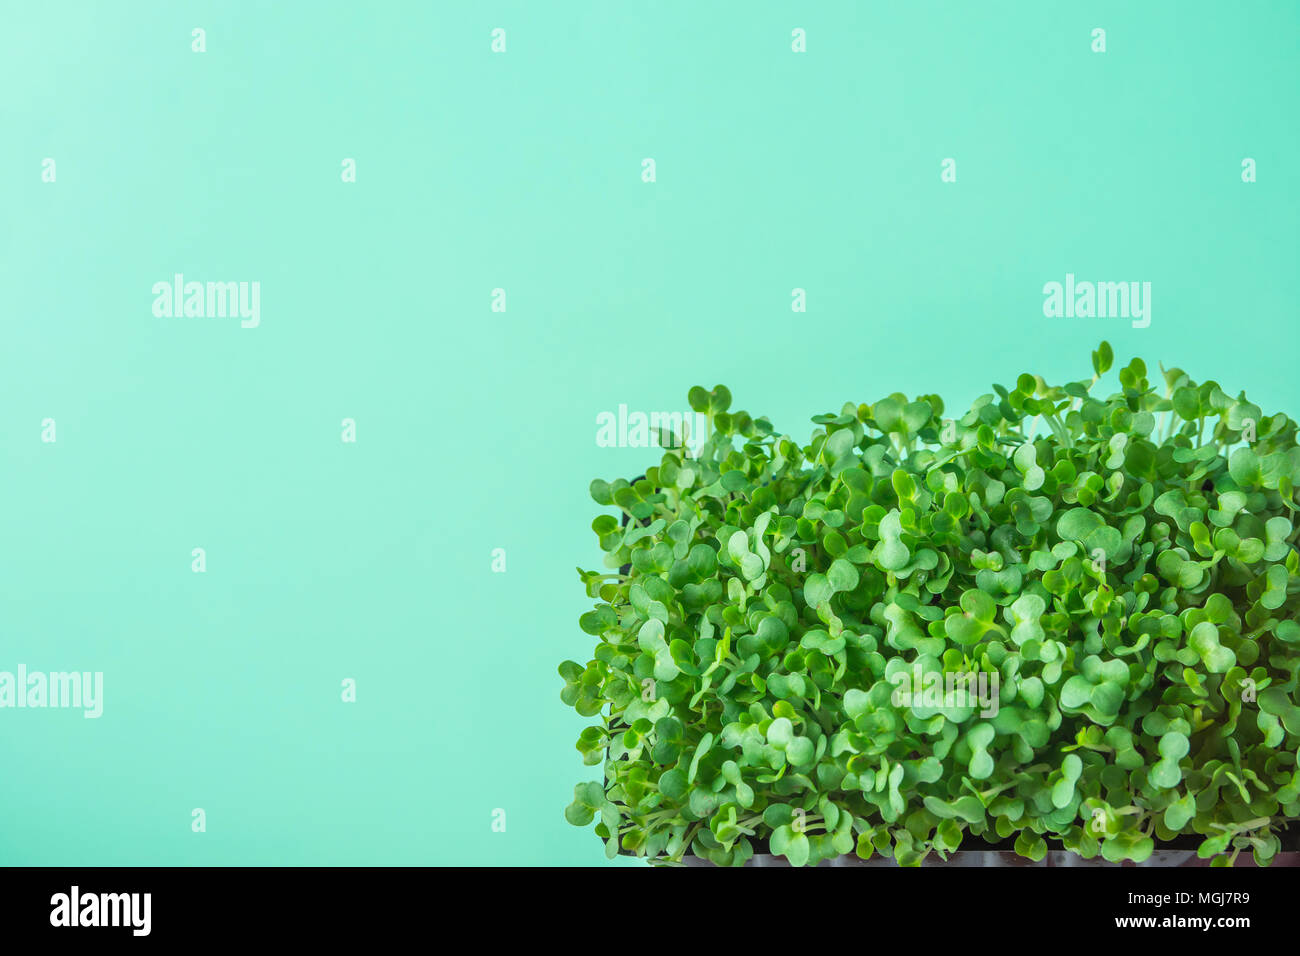 Junge frische grüne Triebe von Topfpflanzen Brunnenkresse auf Pastell Türkis Hintergrund. Gartenbau gesunde Pflanzliche Ernährung Food garnieren Konzept. Minimalistische St Stockfoto